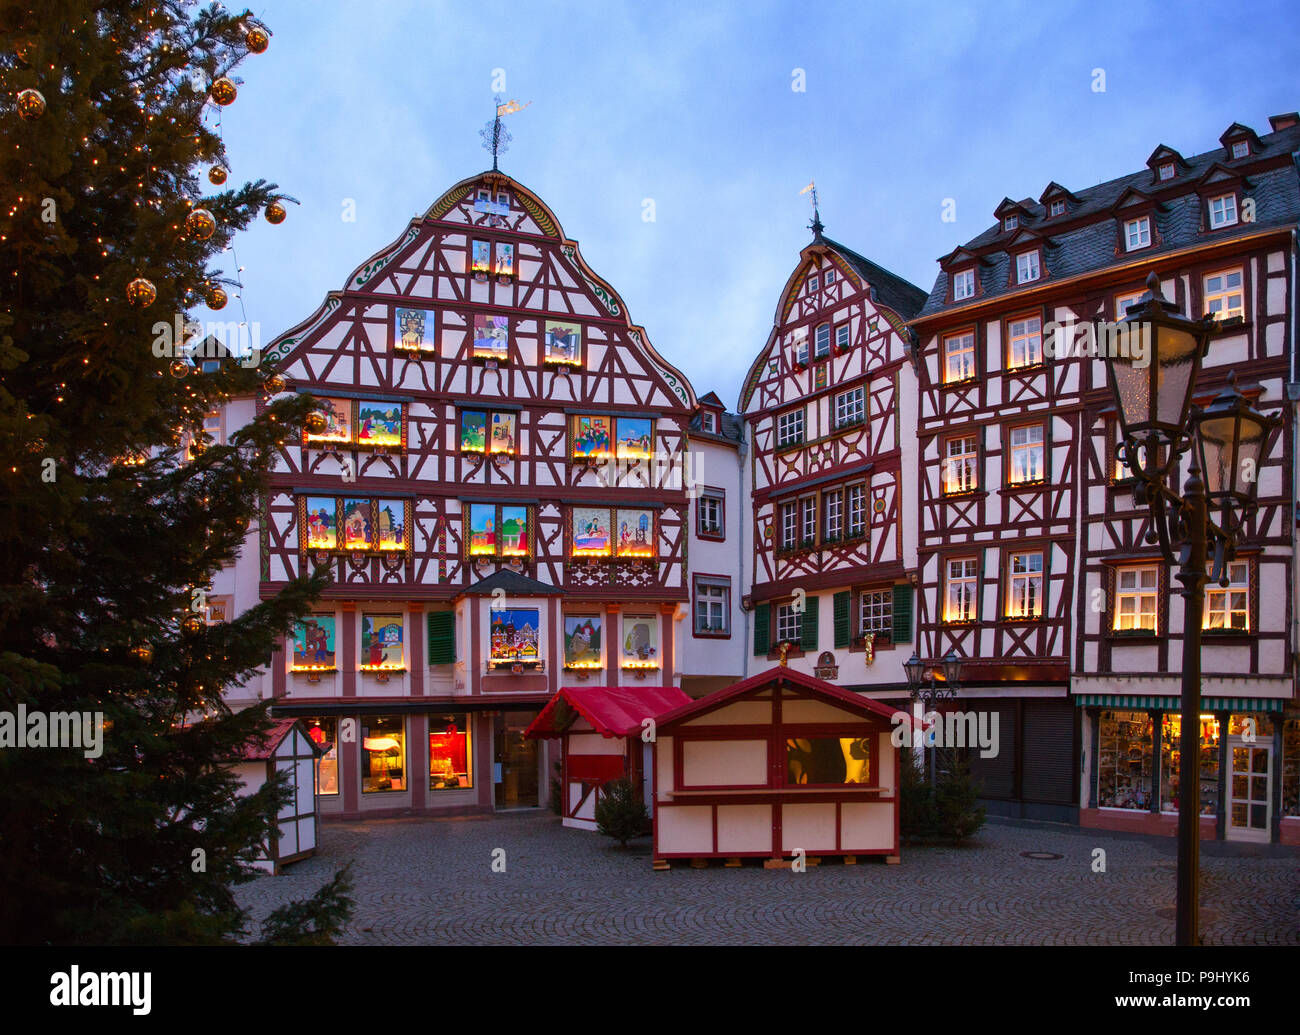 Marketplace on Christmas Eve at dusk, Bernkastel-Kues, Rhineland-Palatinate, Germany. Stock Photo